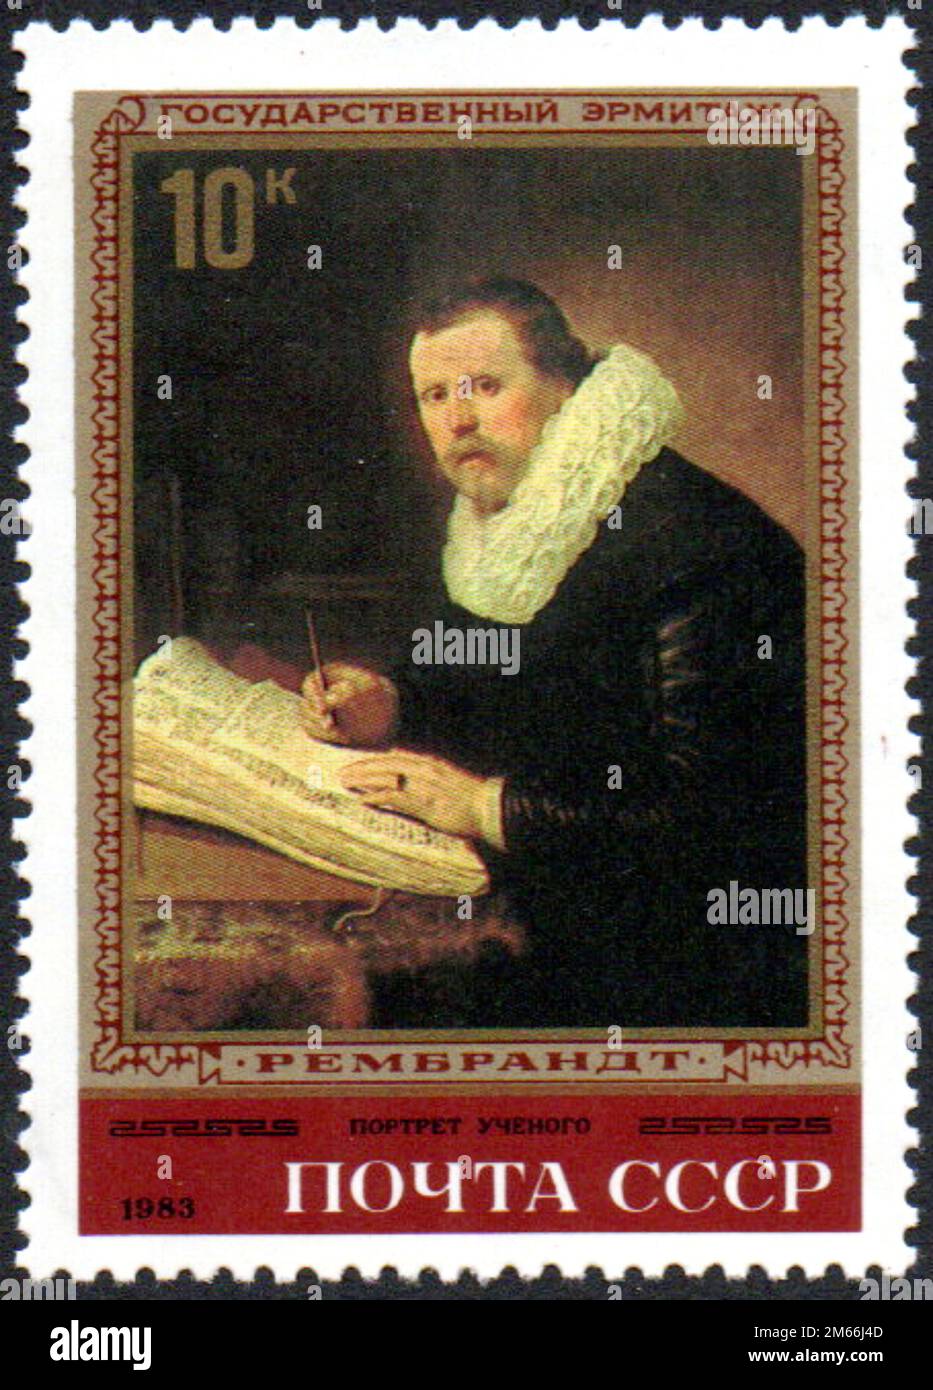 Portrait d'un scientifique, Rembrandt - peinture de Rembrandt au musée de l'Ermitage, Leningrad. SG SU 5313 Banque D'Images